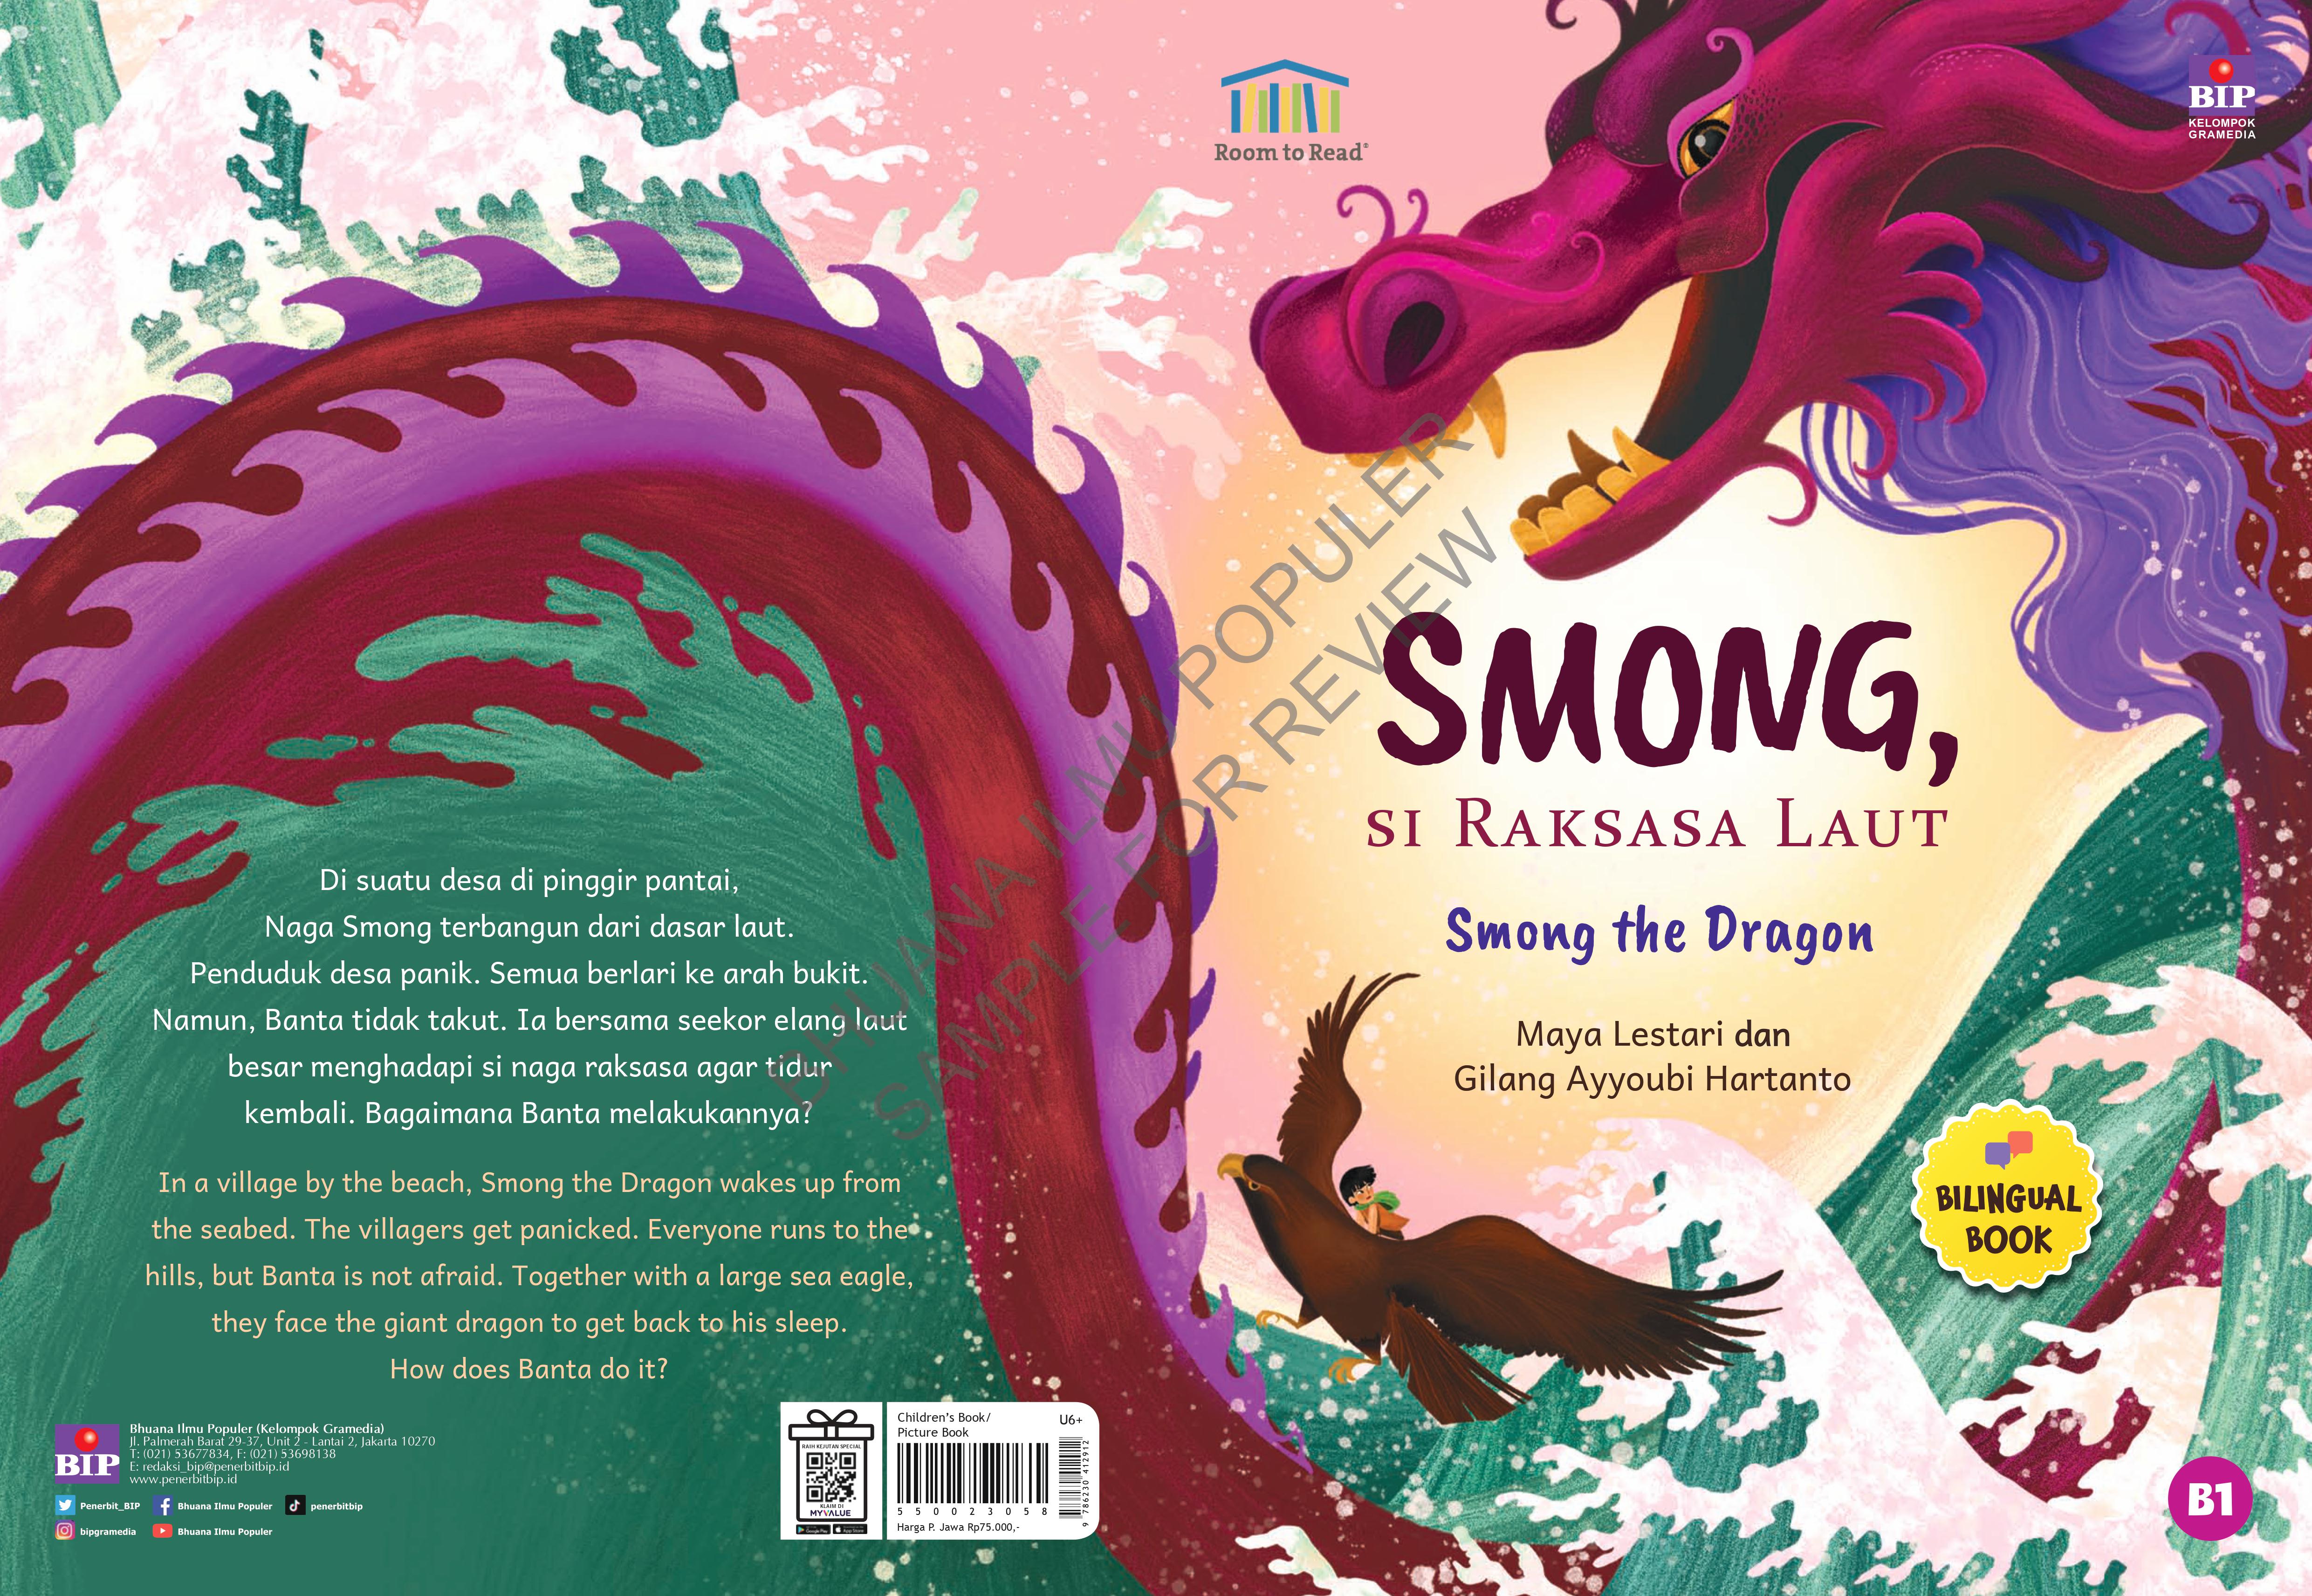 Smong the Dragon